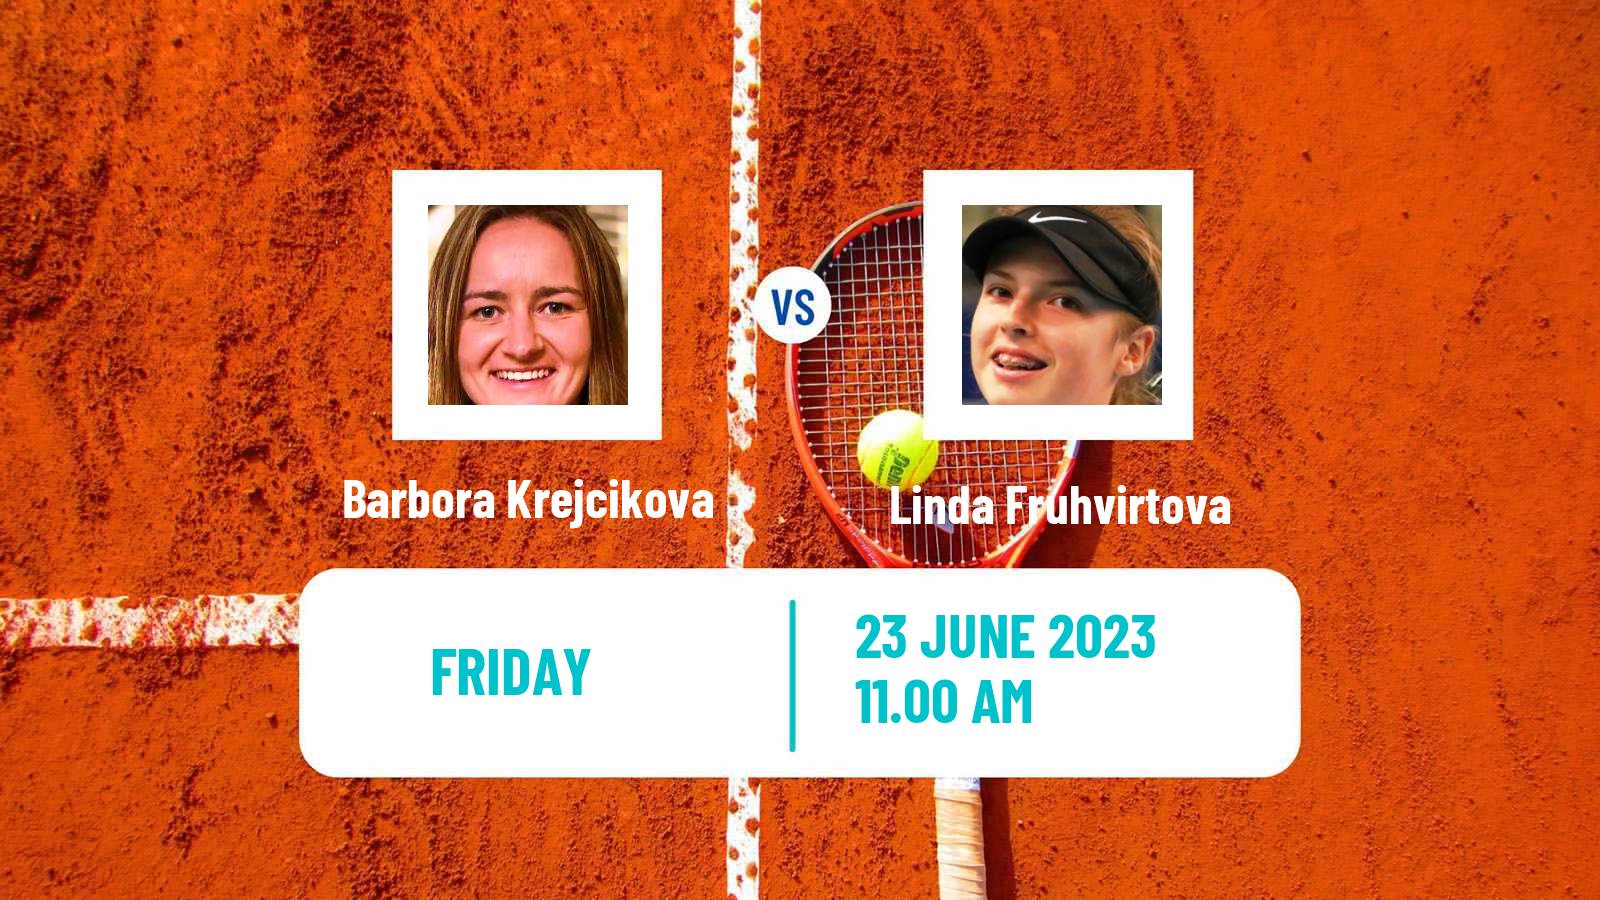 Tennis WTA Birmingham Barbora Krejcikova - Linda Fruhvirtova